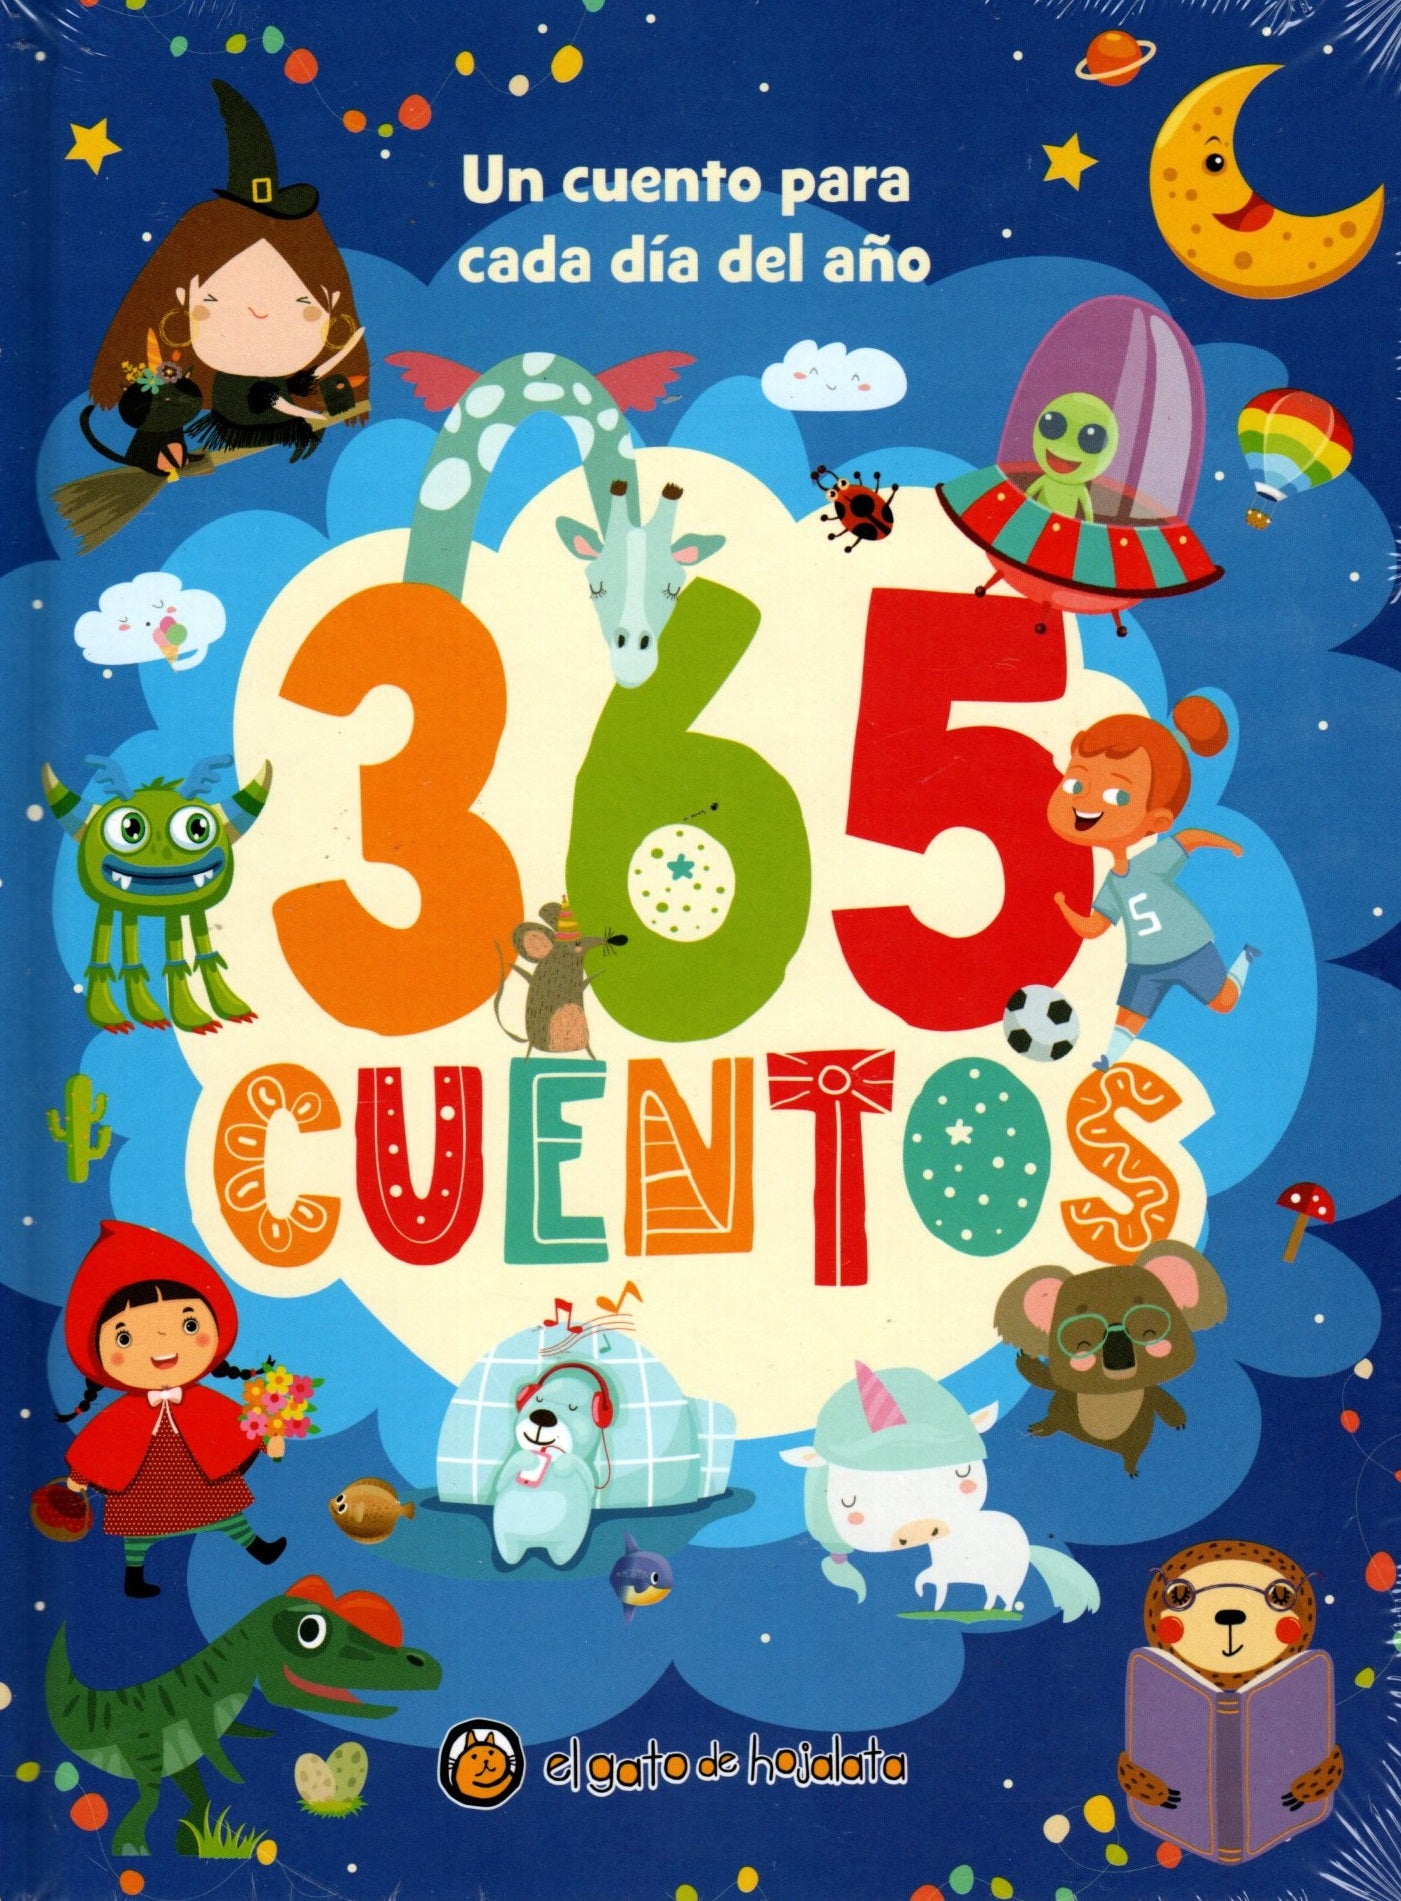 Libro 365 Cuentos: Una Historia Cada Día Del Año